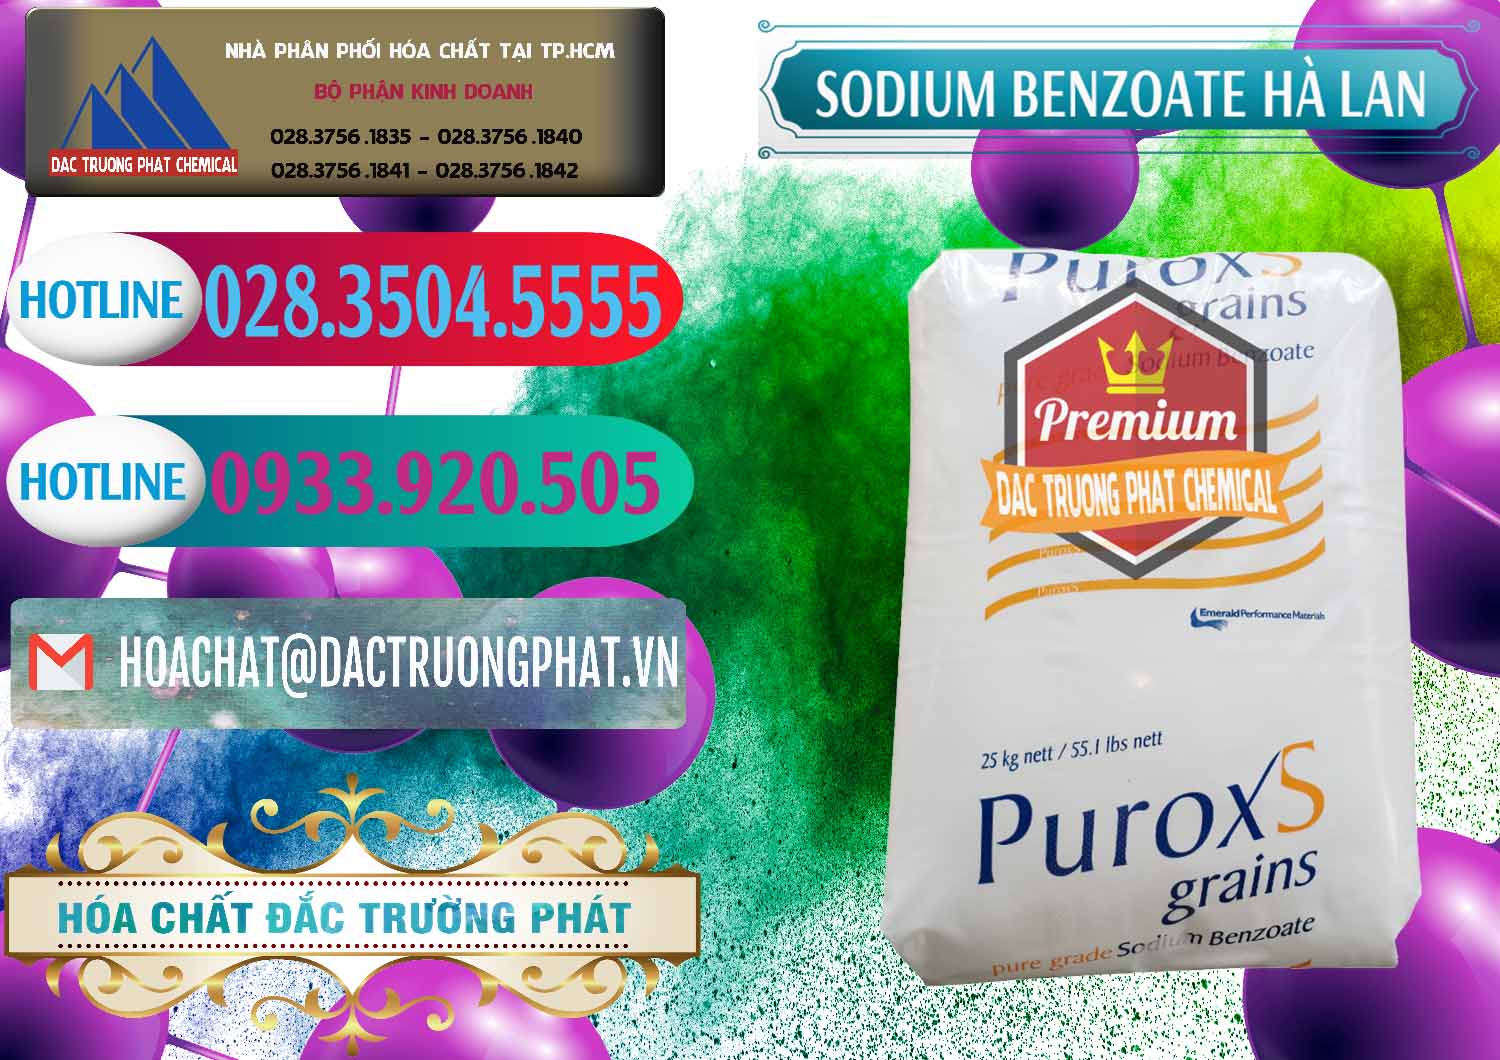 Công ty bán & cung ứng Sodium Benzoate - Mốc Bột Puroxs Hà Lan Netherlands - 0467 - Nơi cung cấp và kinh doanh hóa chất tại TP.HCM - truongphat.vn